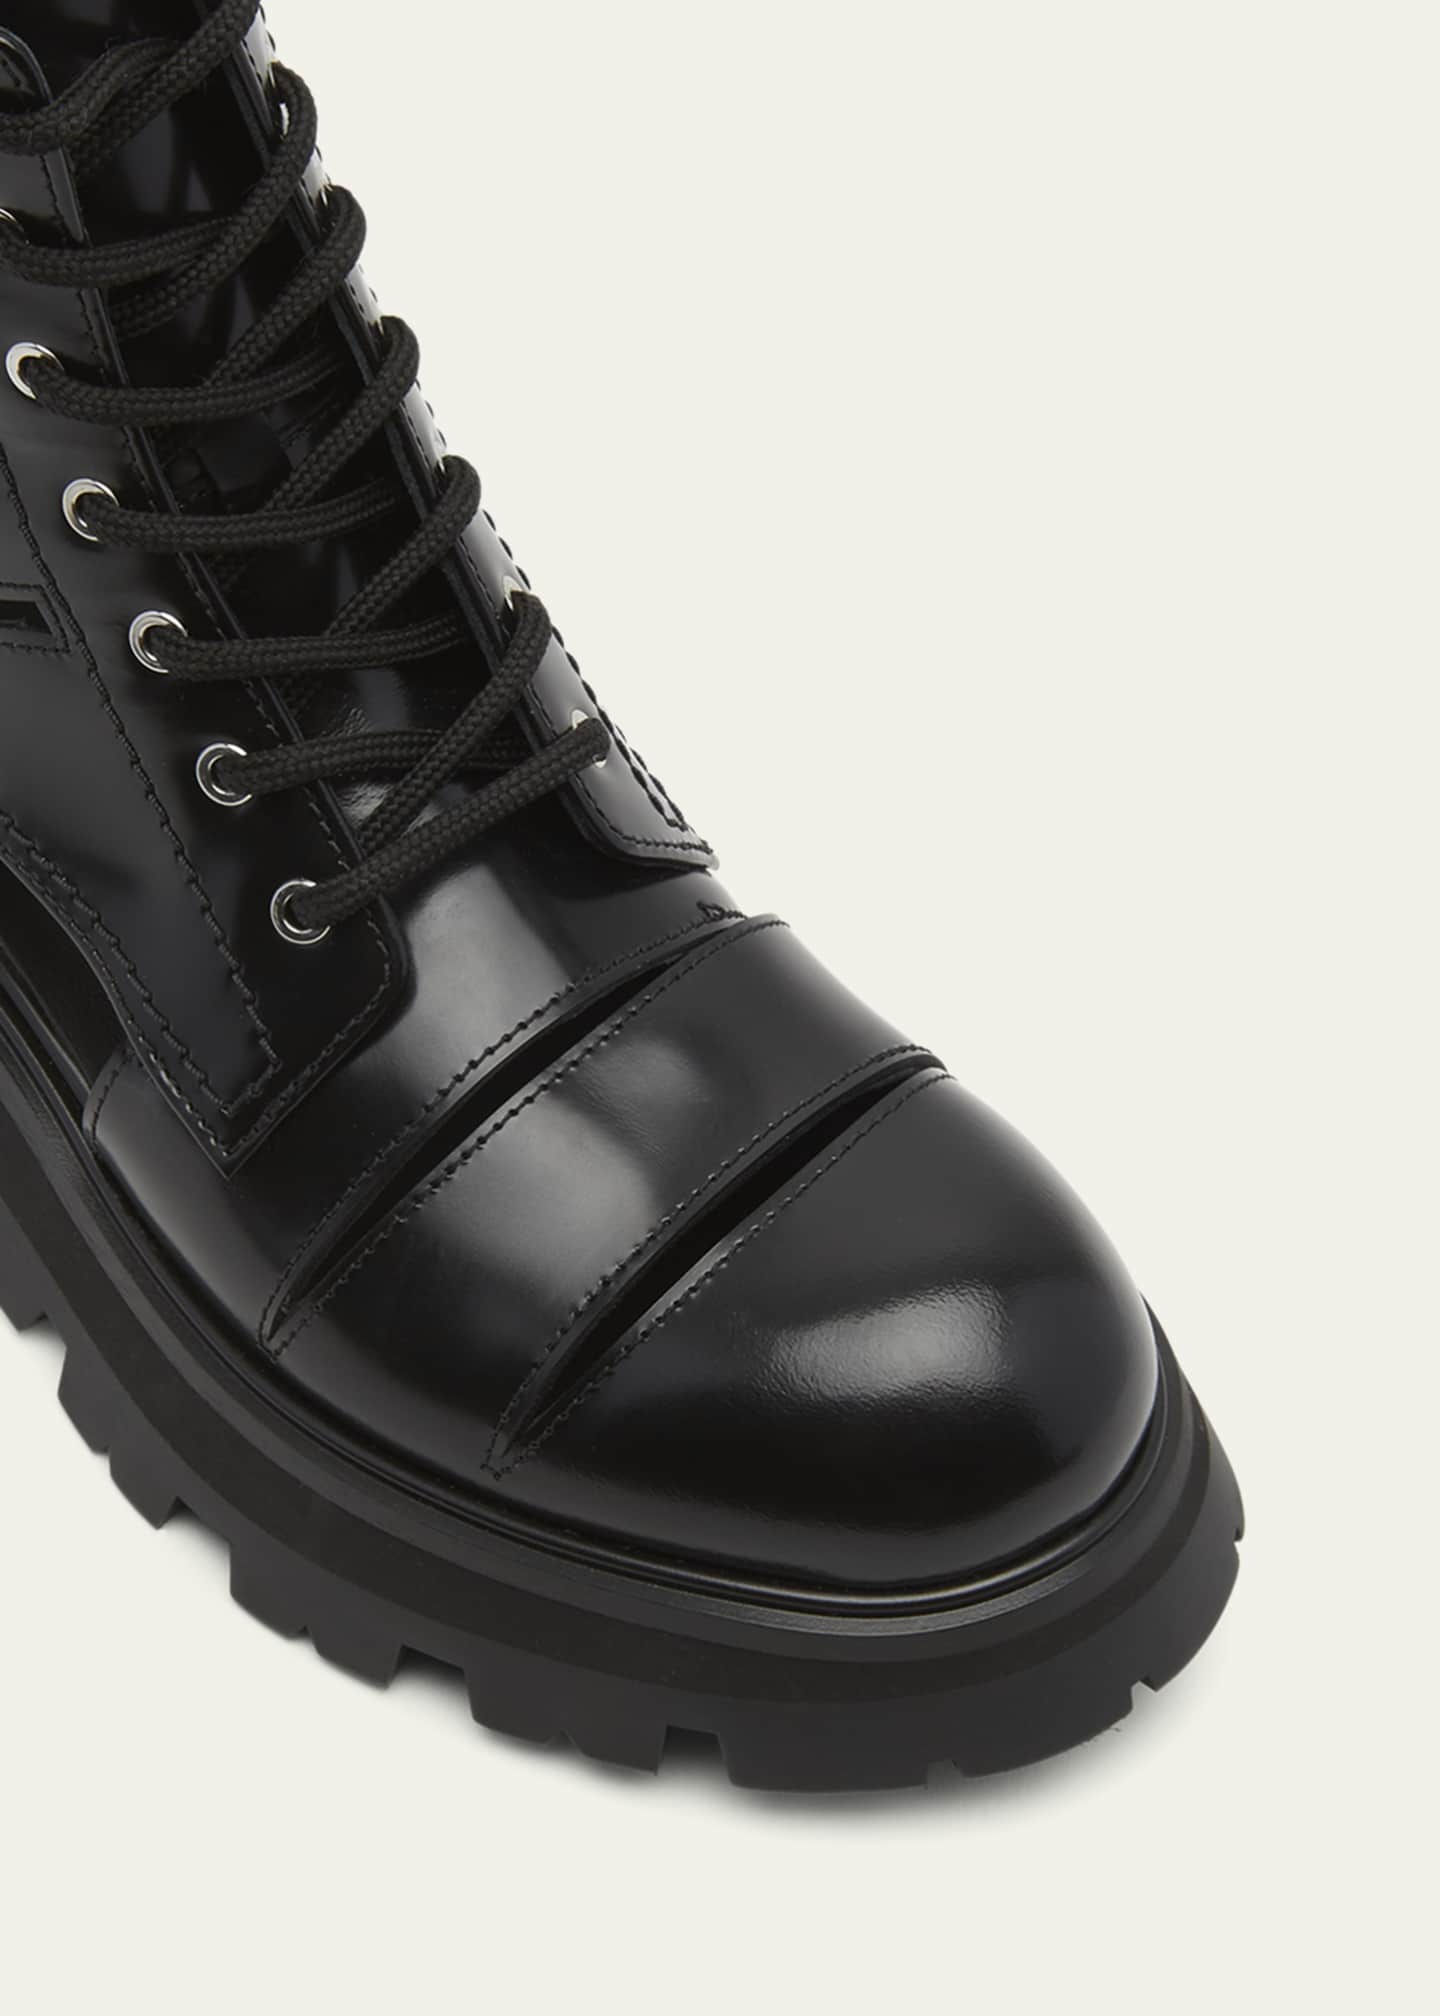 Alexander McQueen The Wander Cutout Leather Boots - Bergdorf Goodman